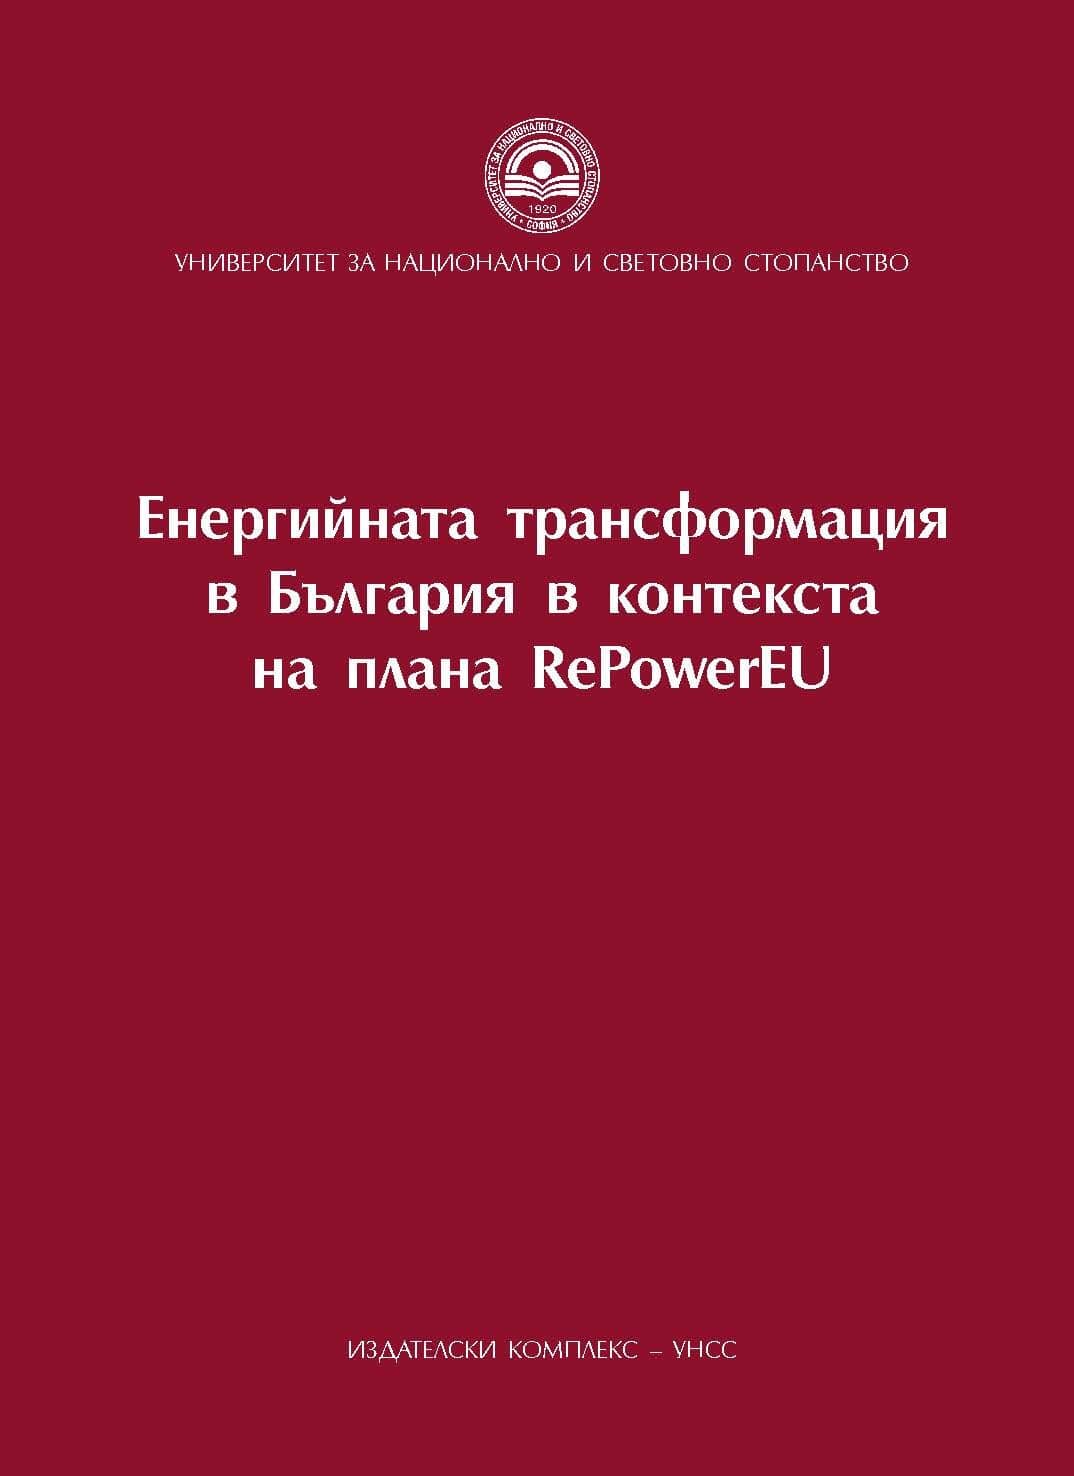 RePowerEU и новото поколение технологии за управление и контрол в секторите транспорт и енергетика